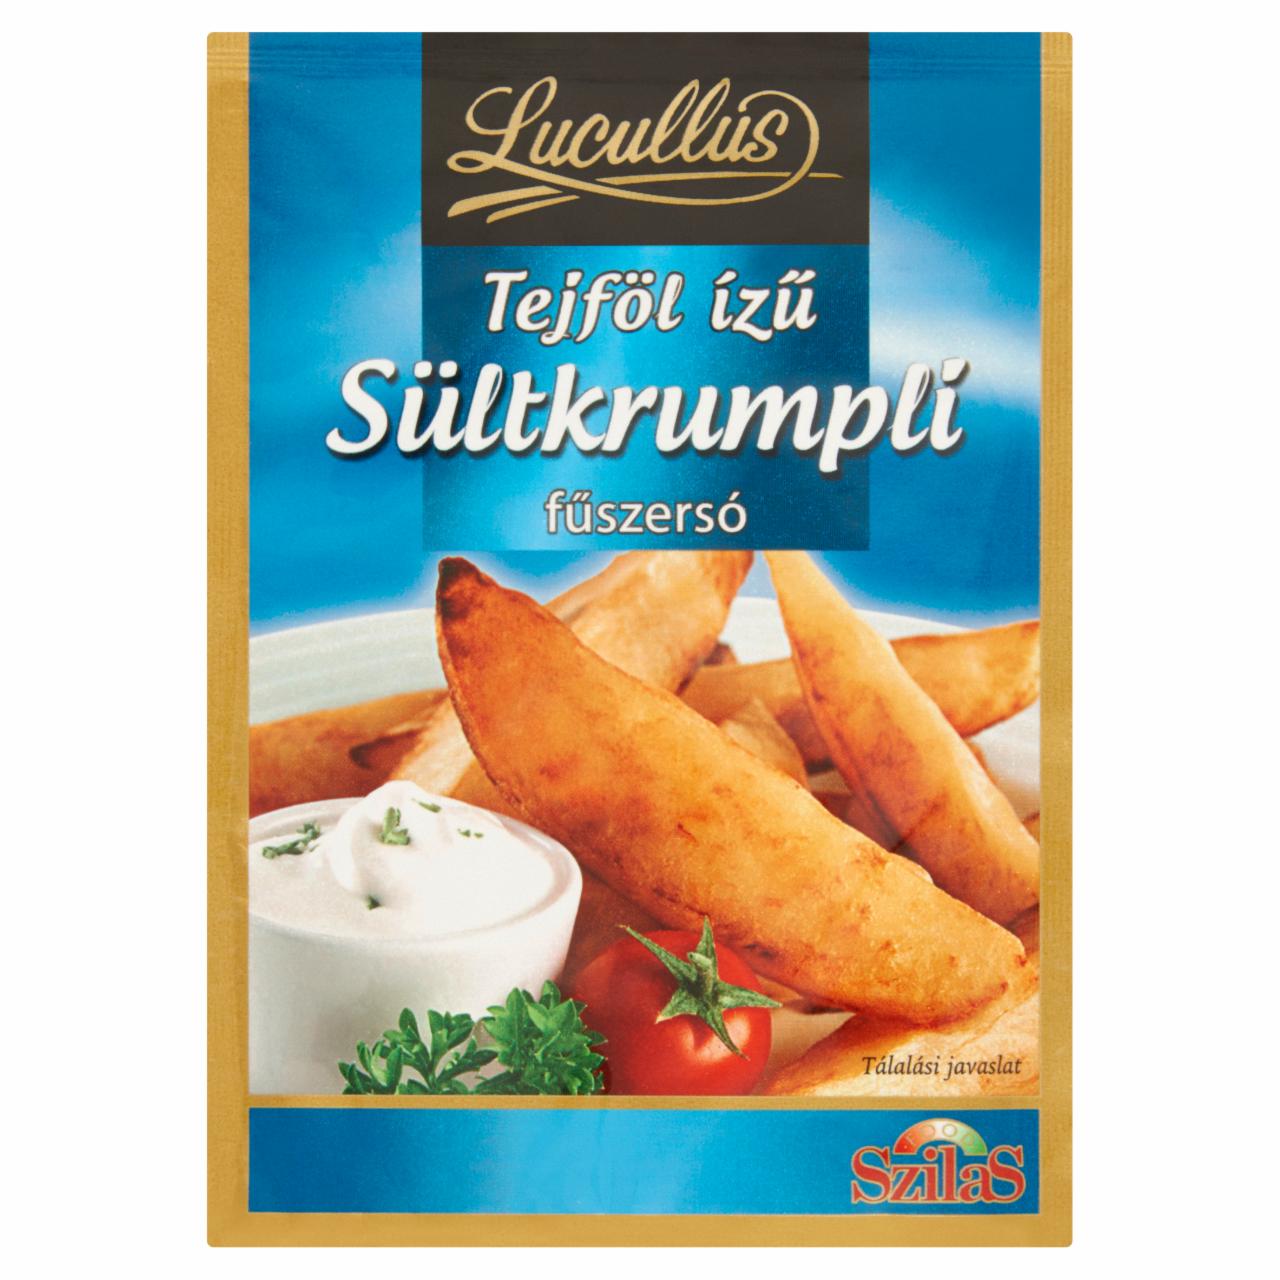 Képek - Lucullus tejföl ízű sültkrumpli fűszersó 25 g